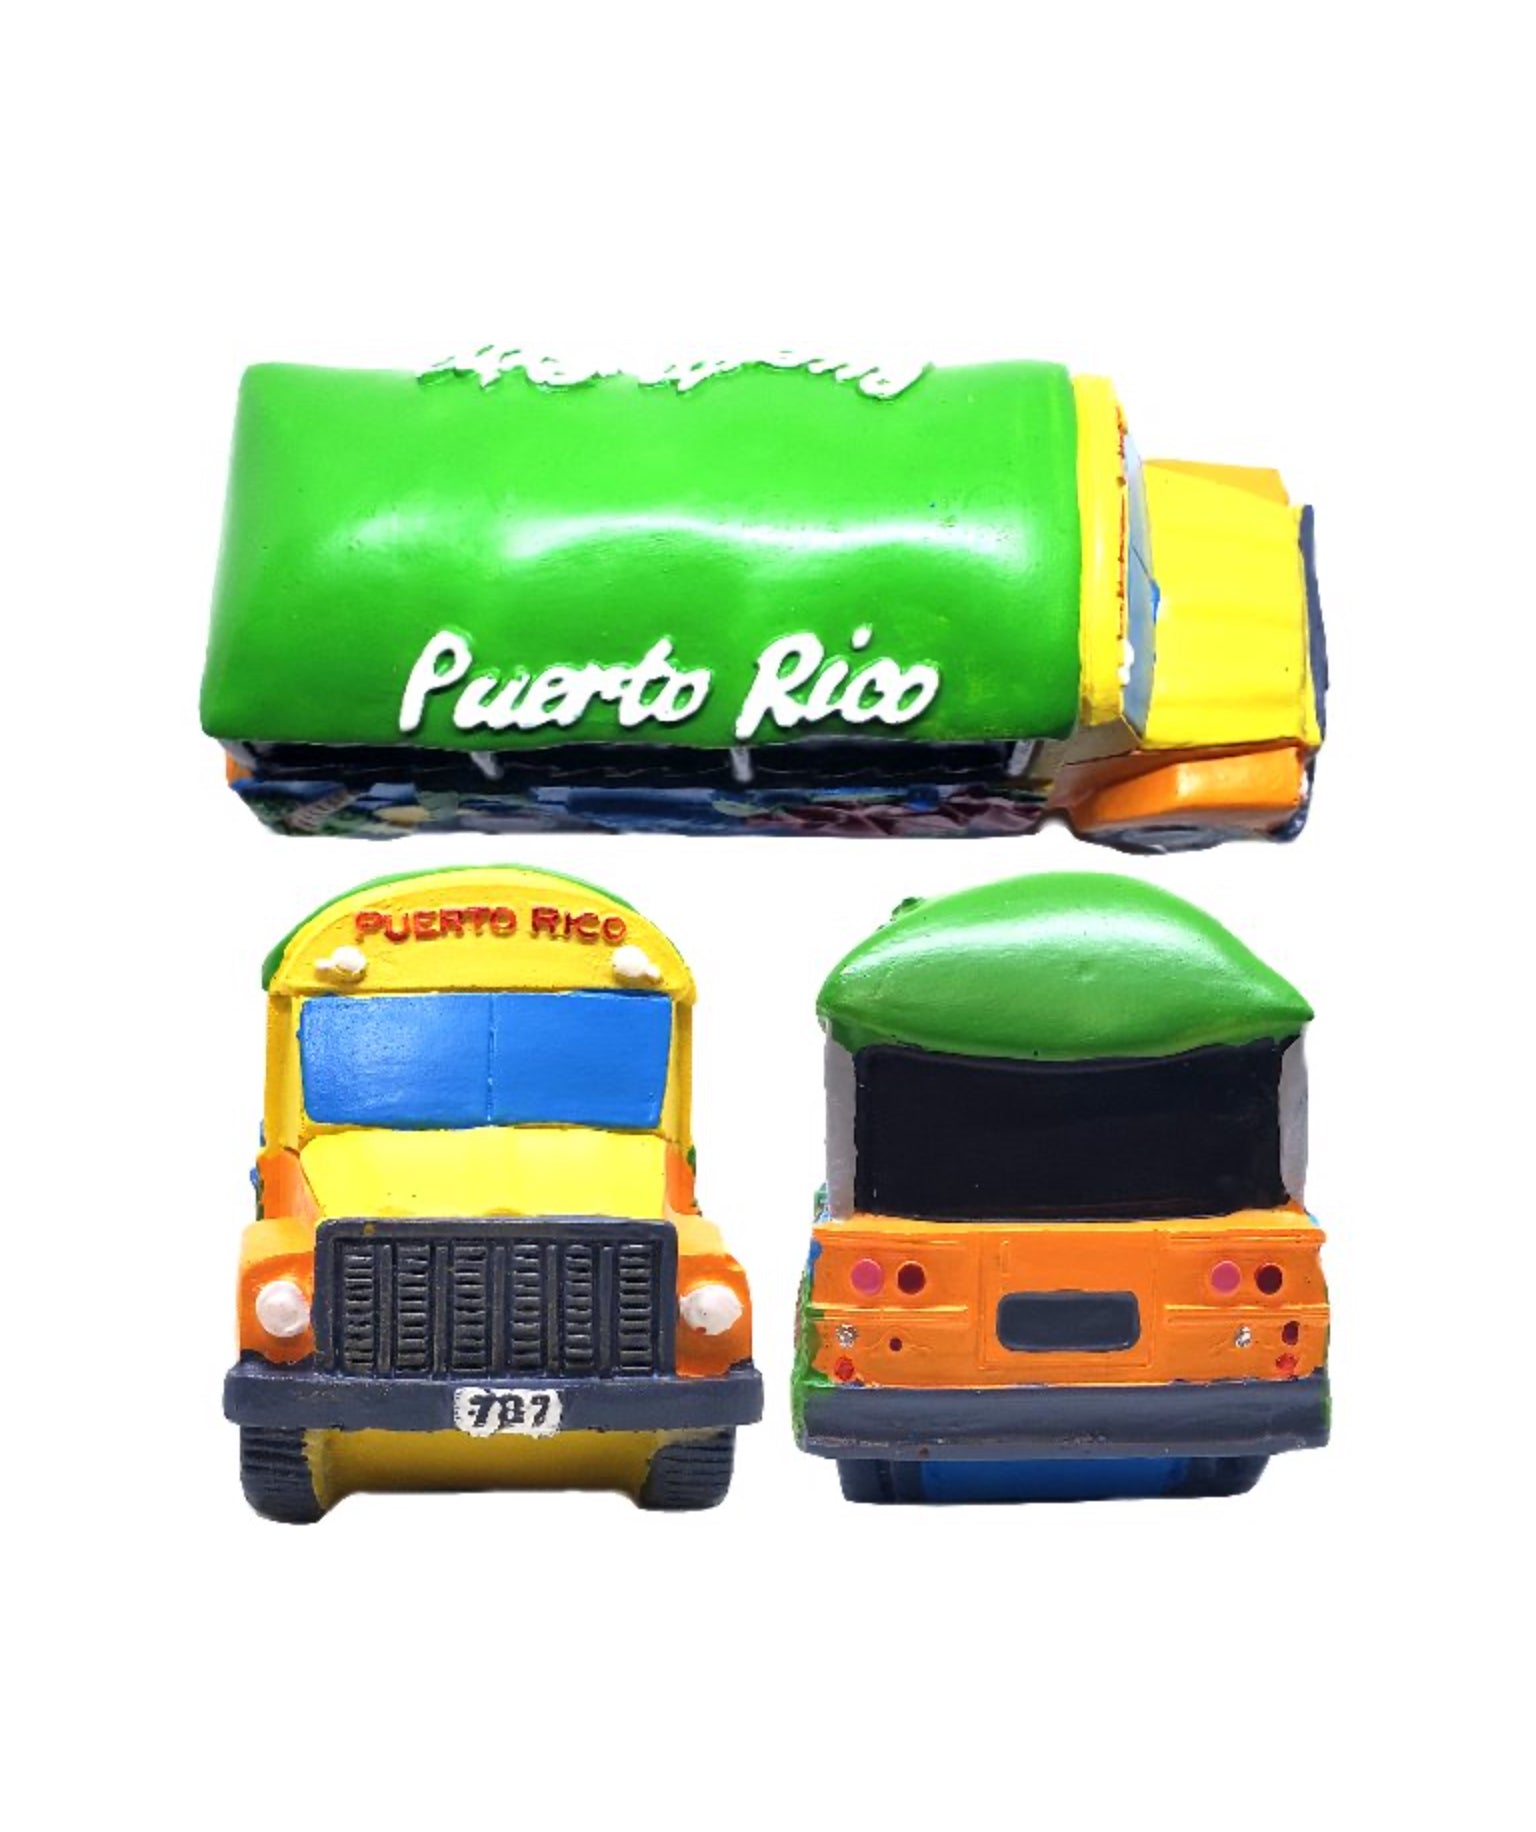 Puerto Rico Chinchorreo Bus Figures